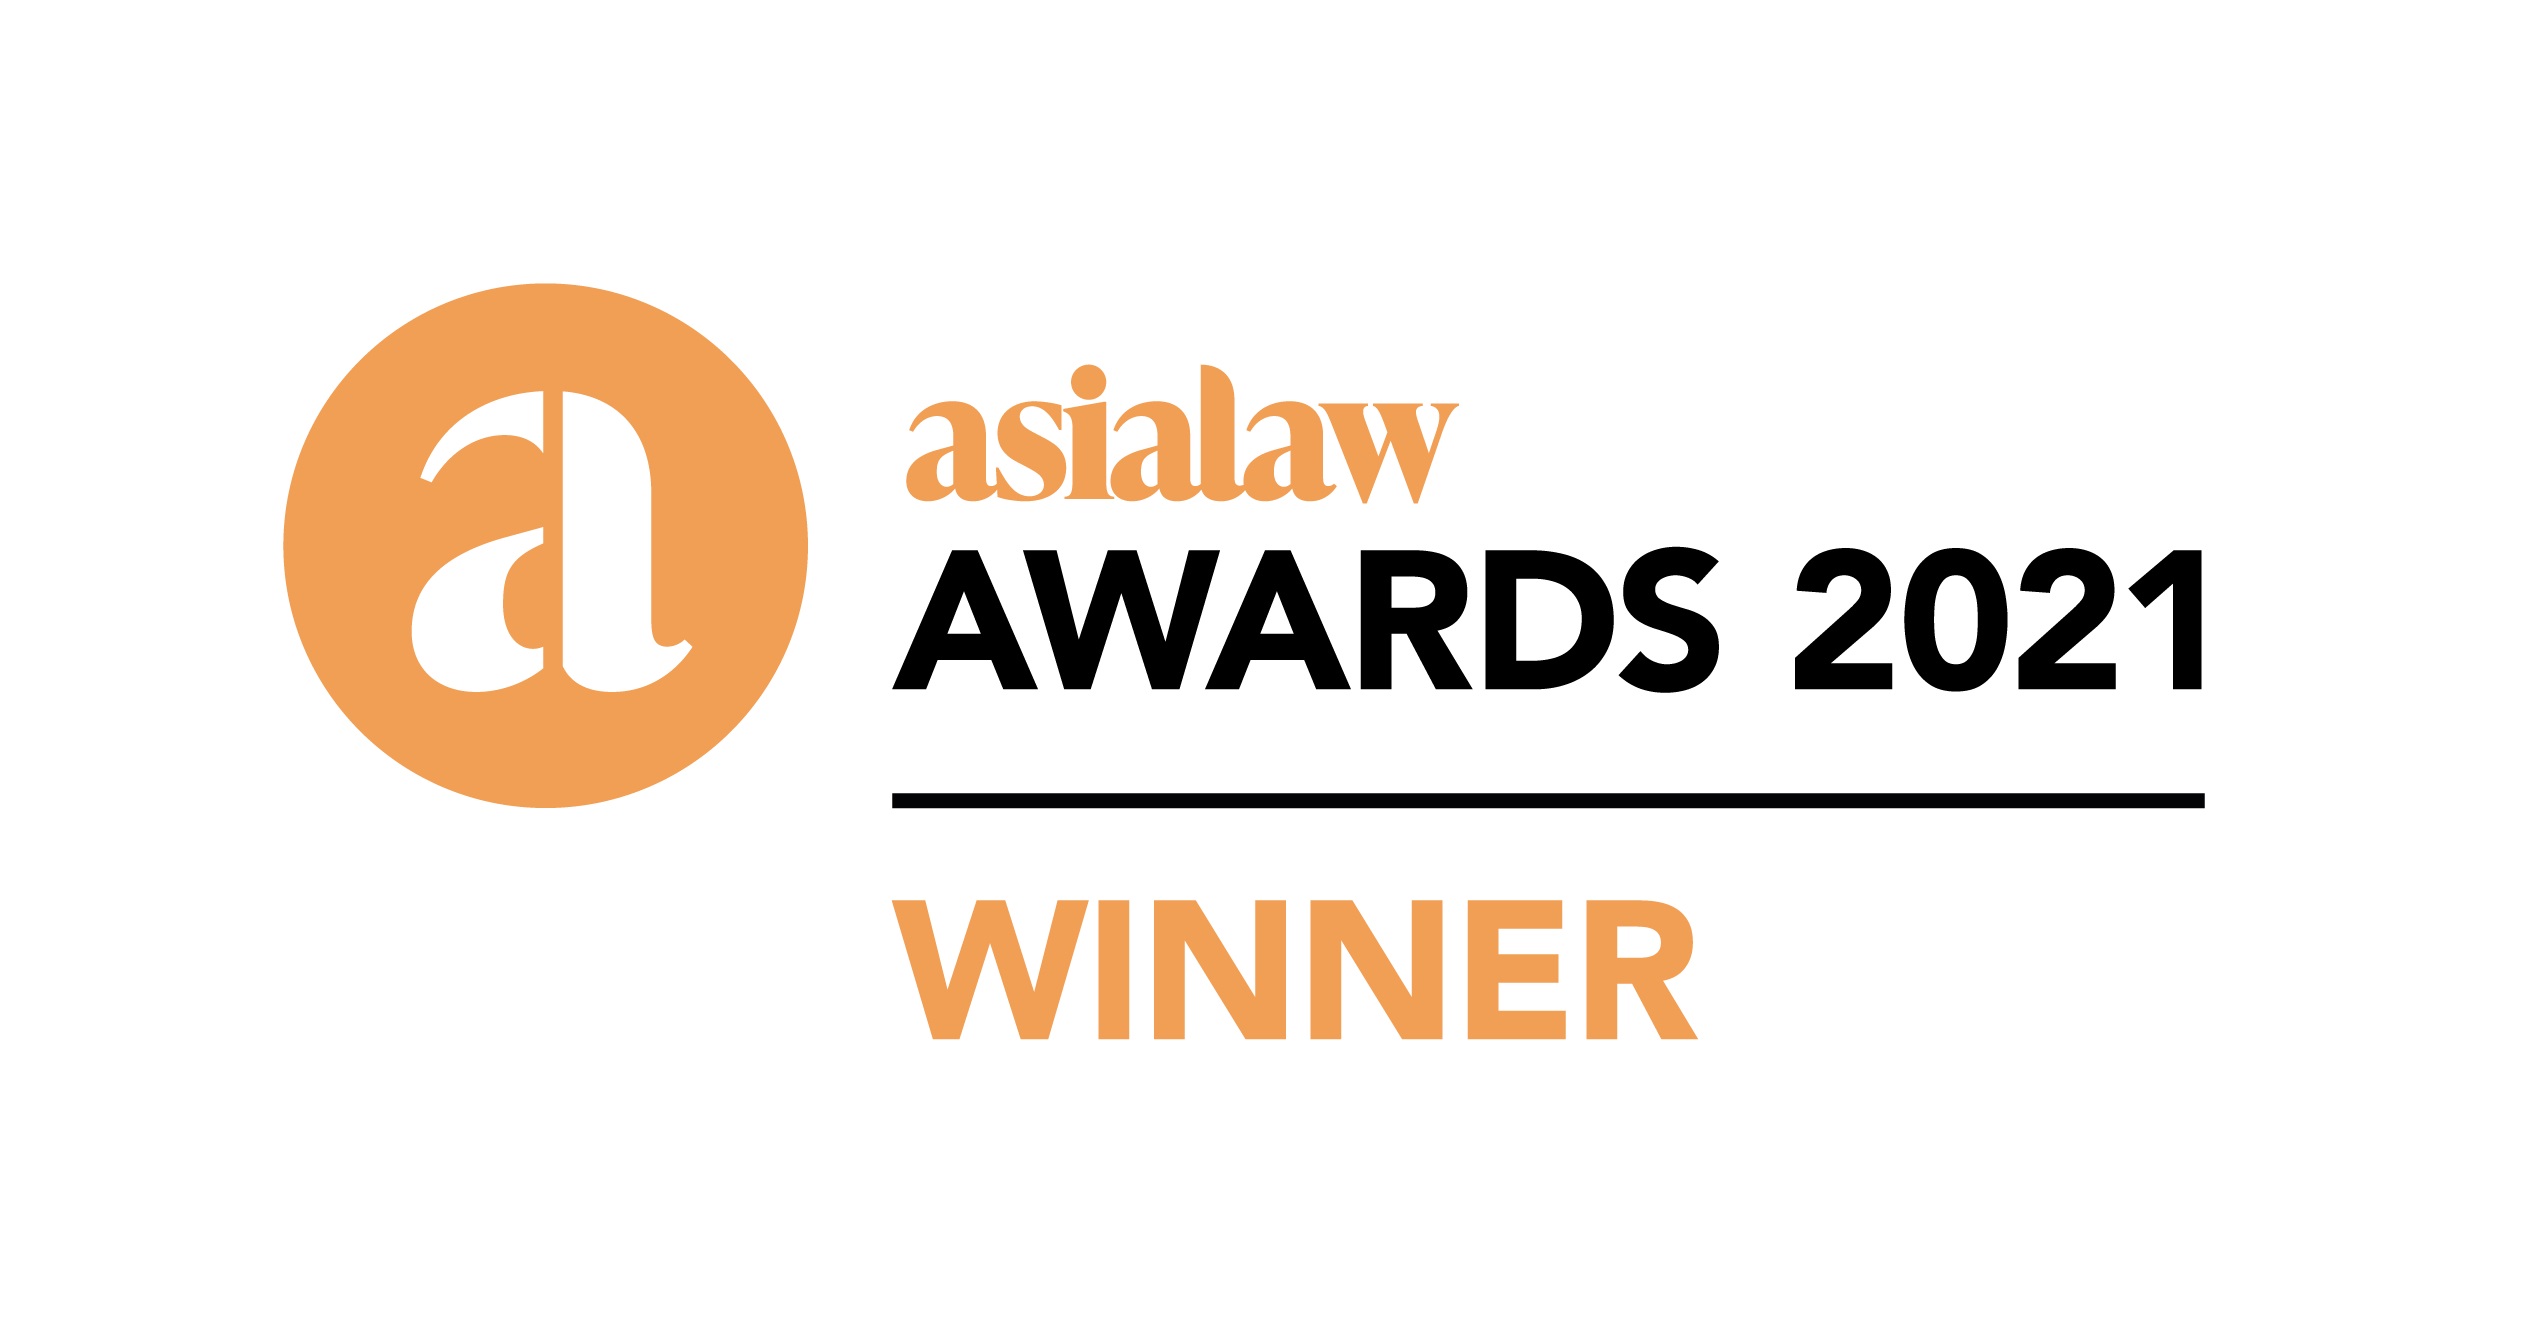 asialaw Awards